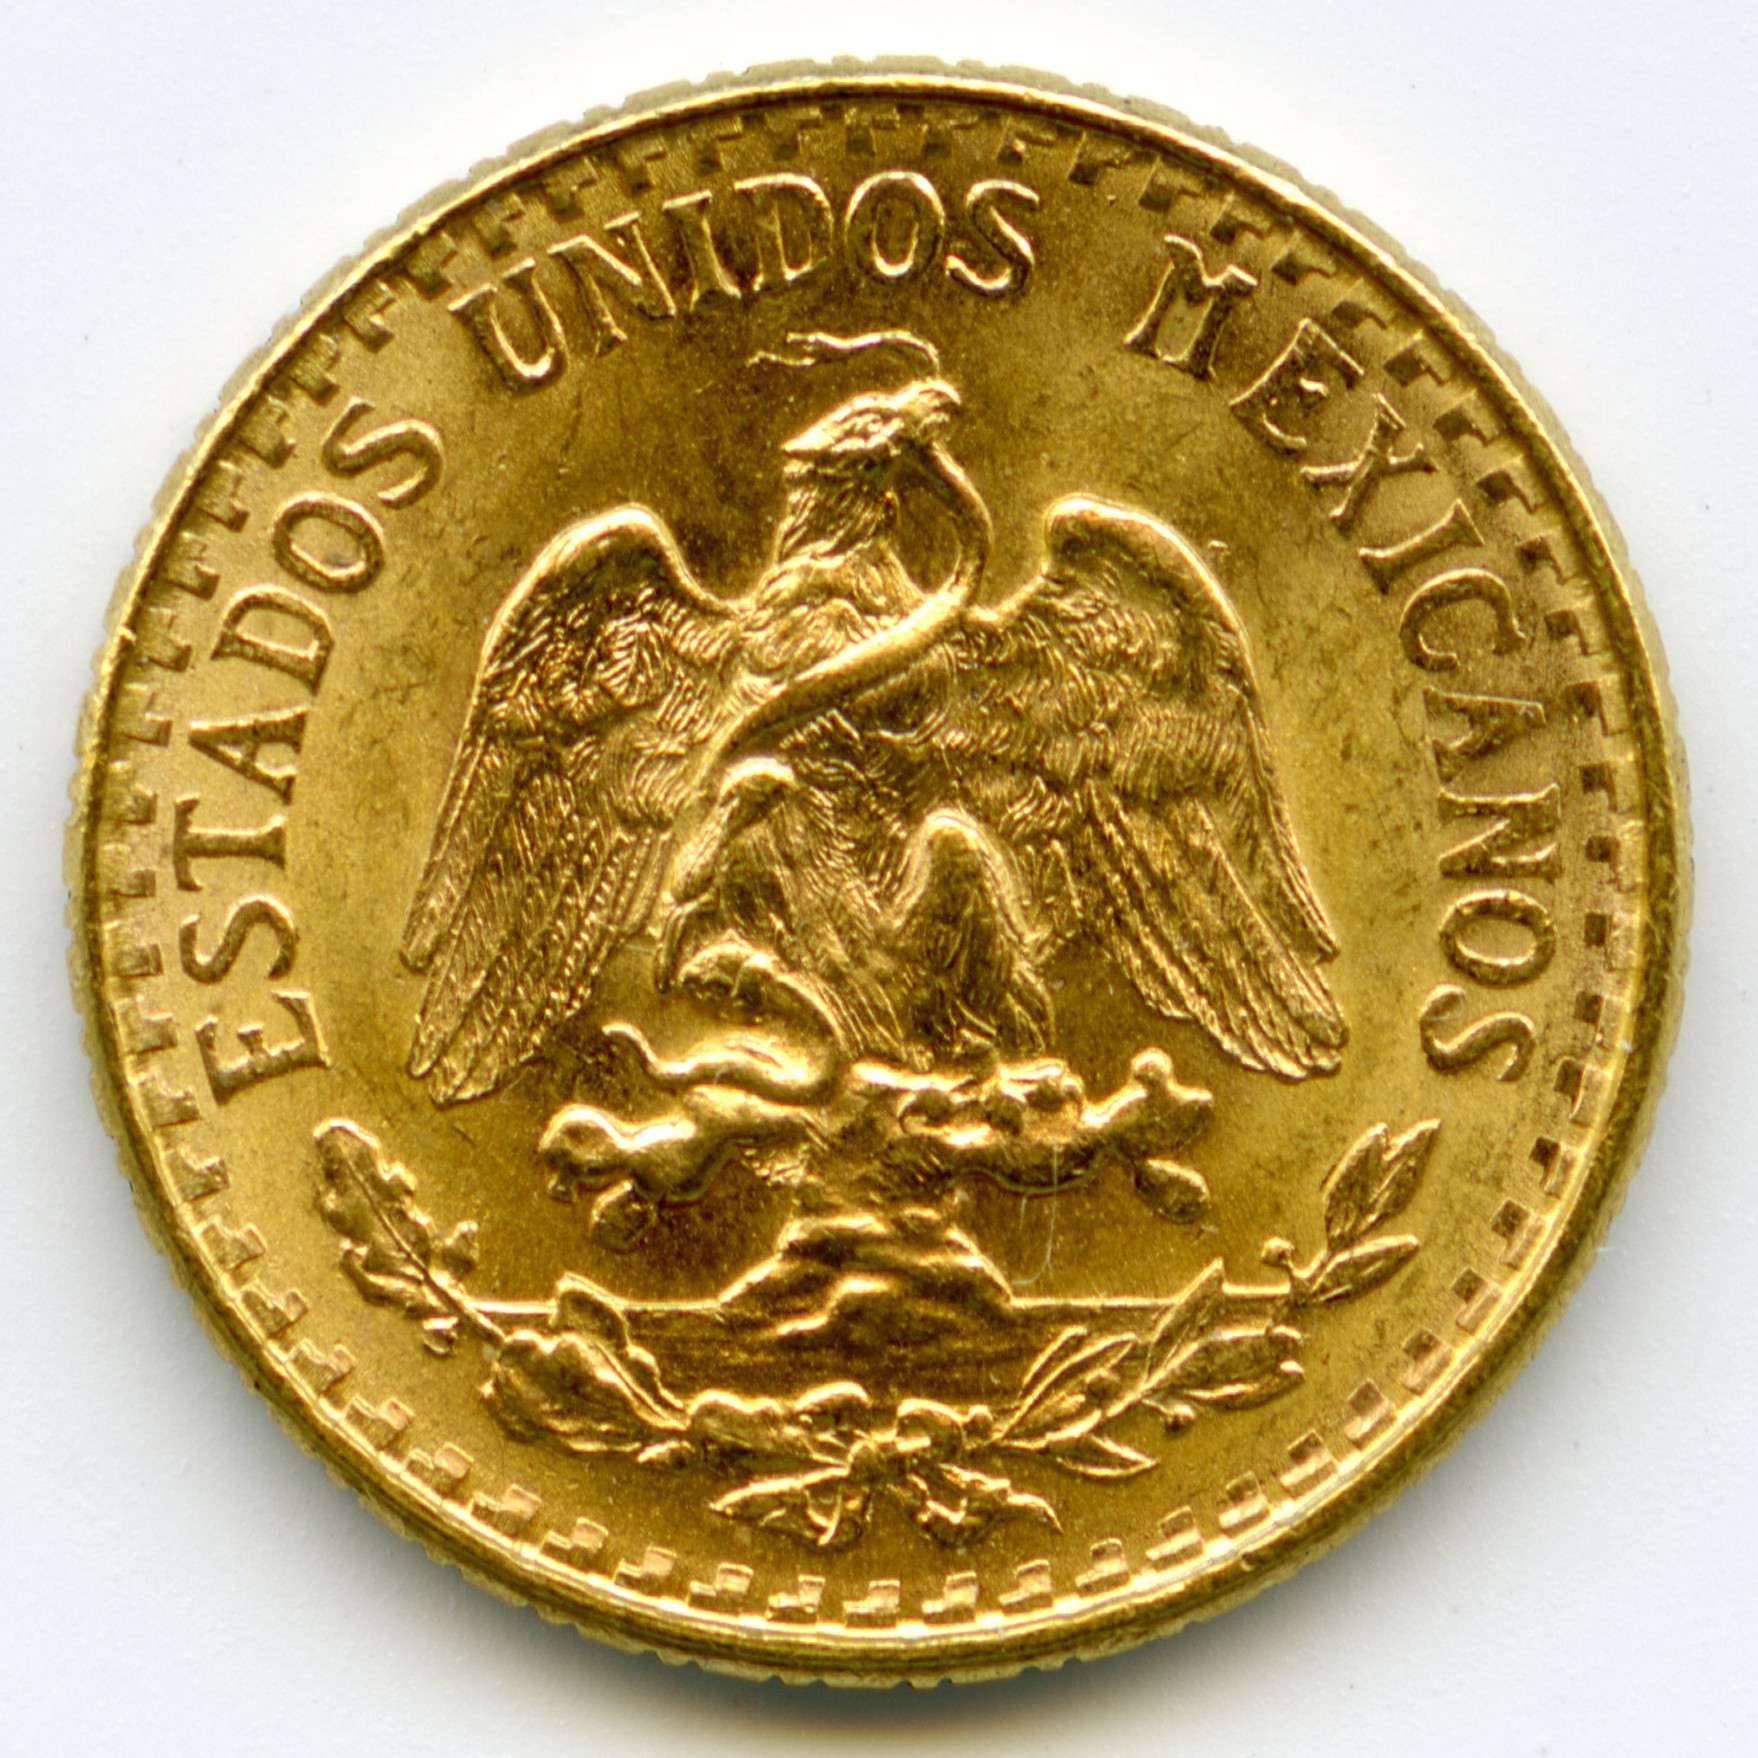 Mexique - 2 Pesos - 1945 avers